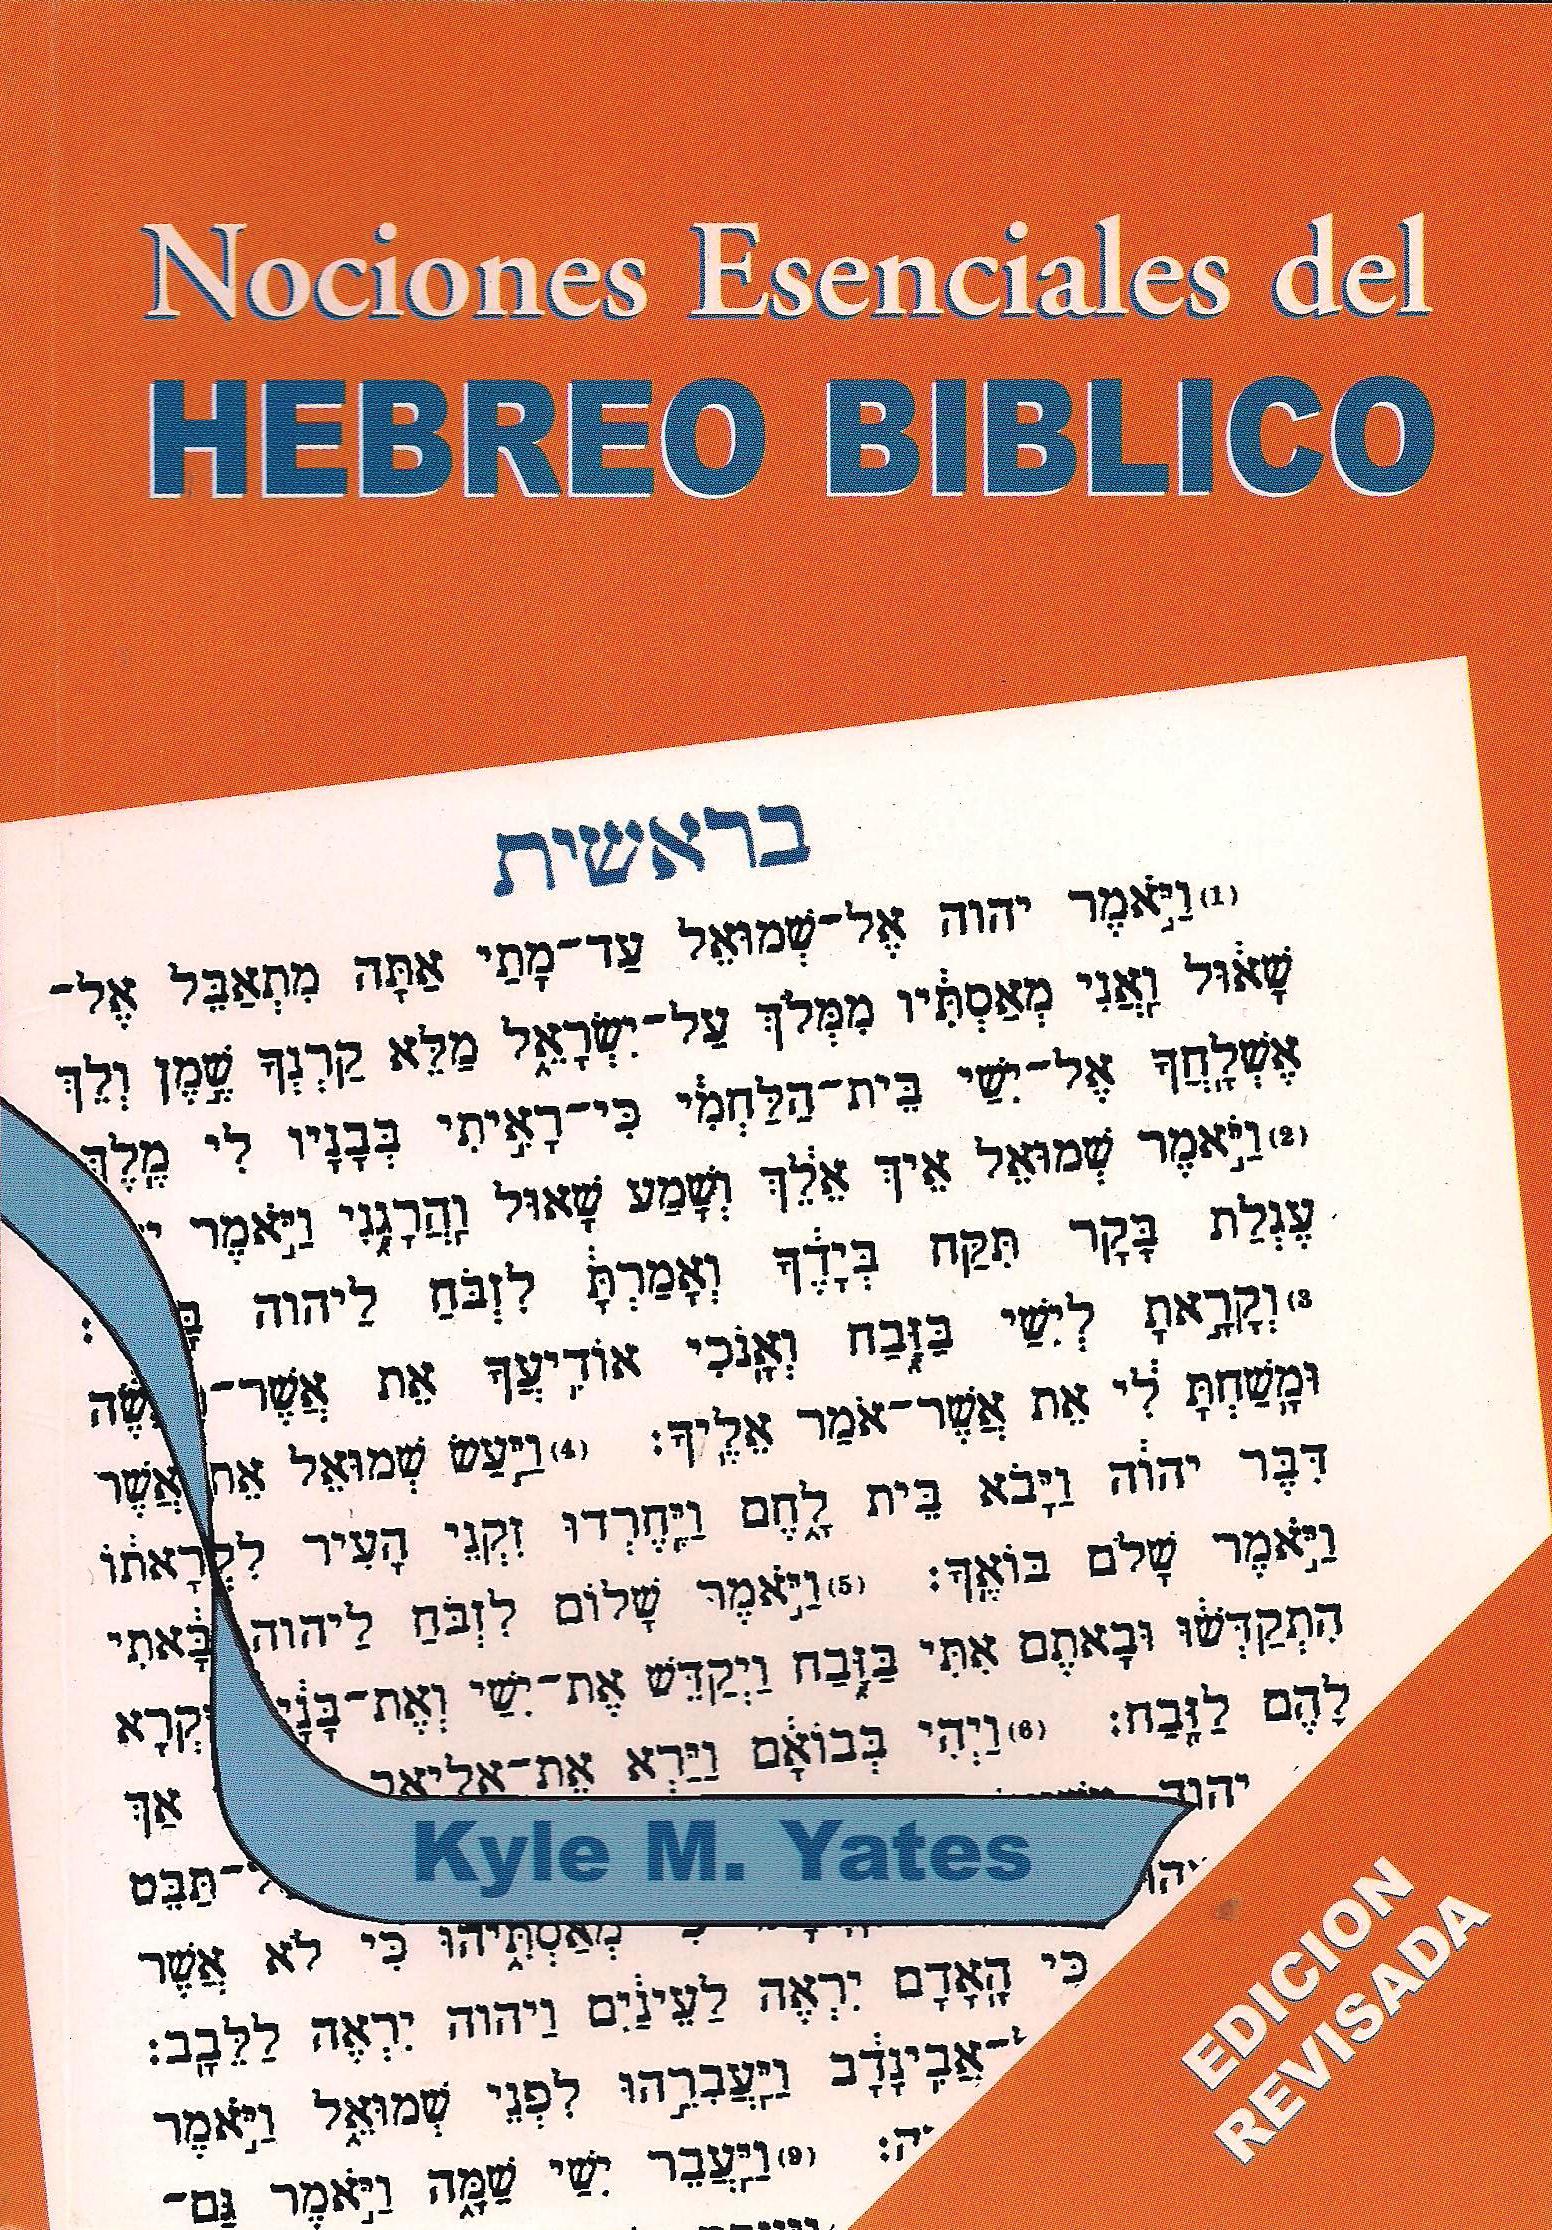 Nociones Esenciales del Hebreo Bíblico